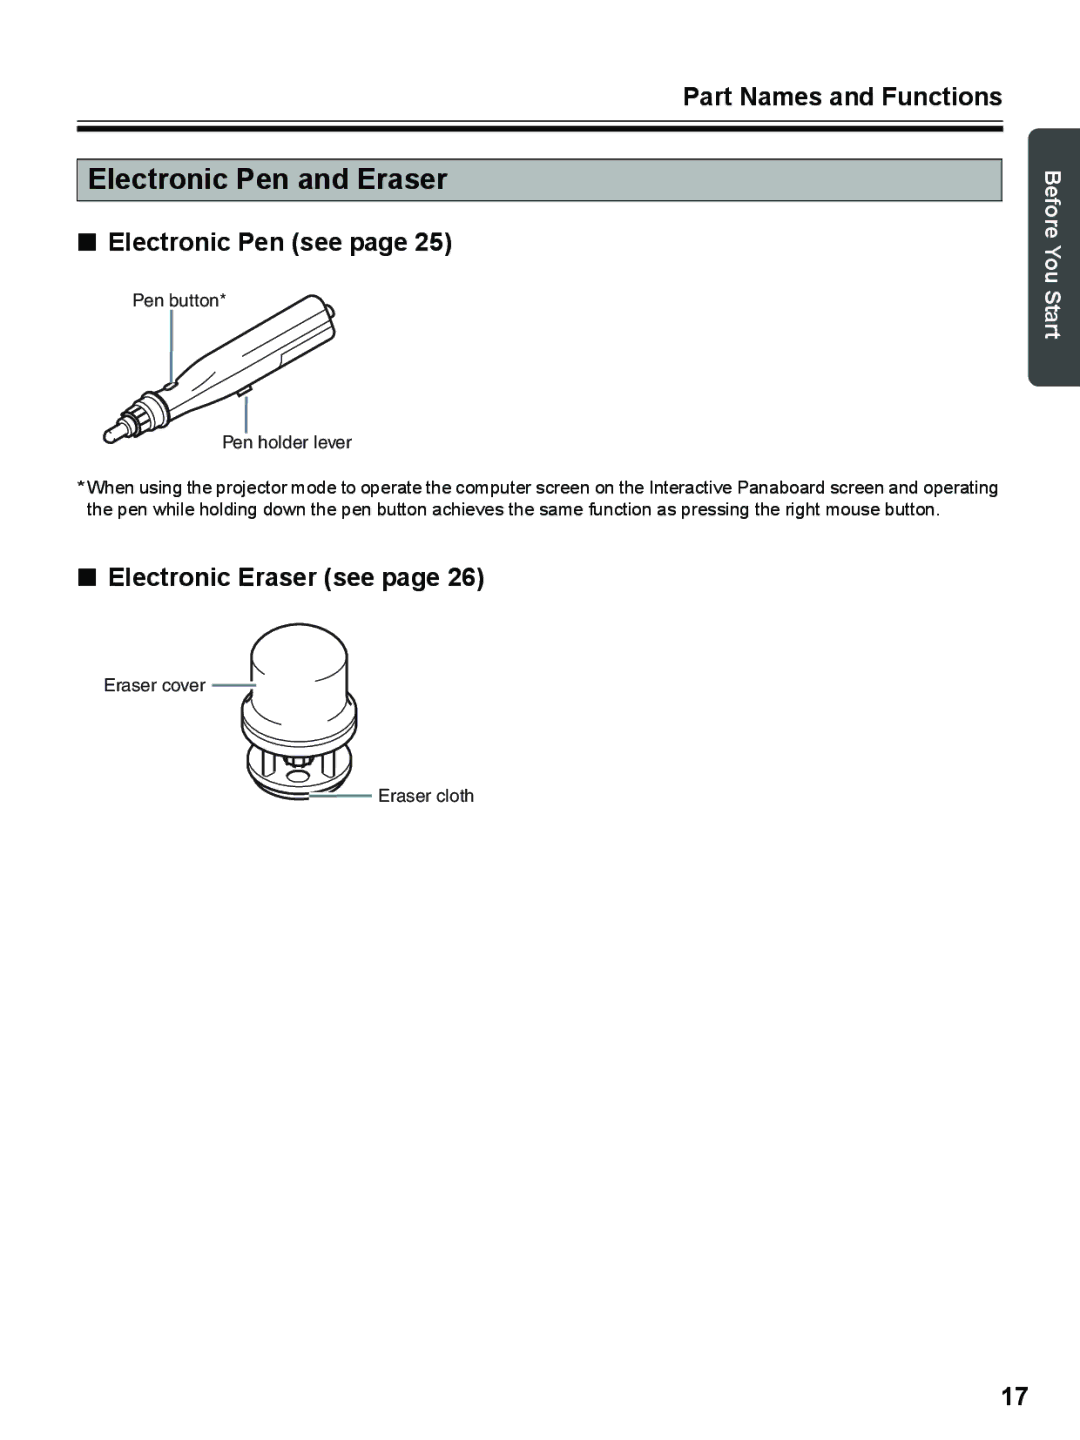 Panasonic UB-8325 operating instructions Electronic Pen and Eraser, Electronic Pen see, Electronic Eraser see 